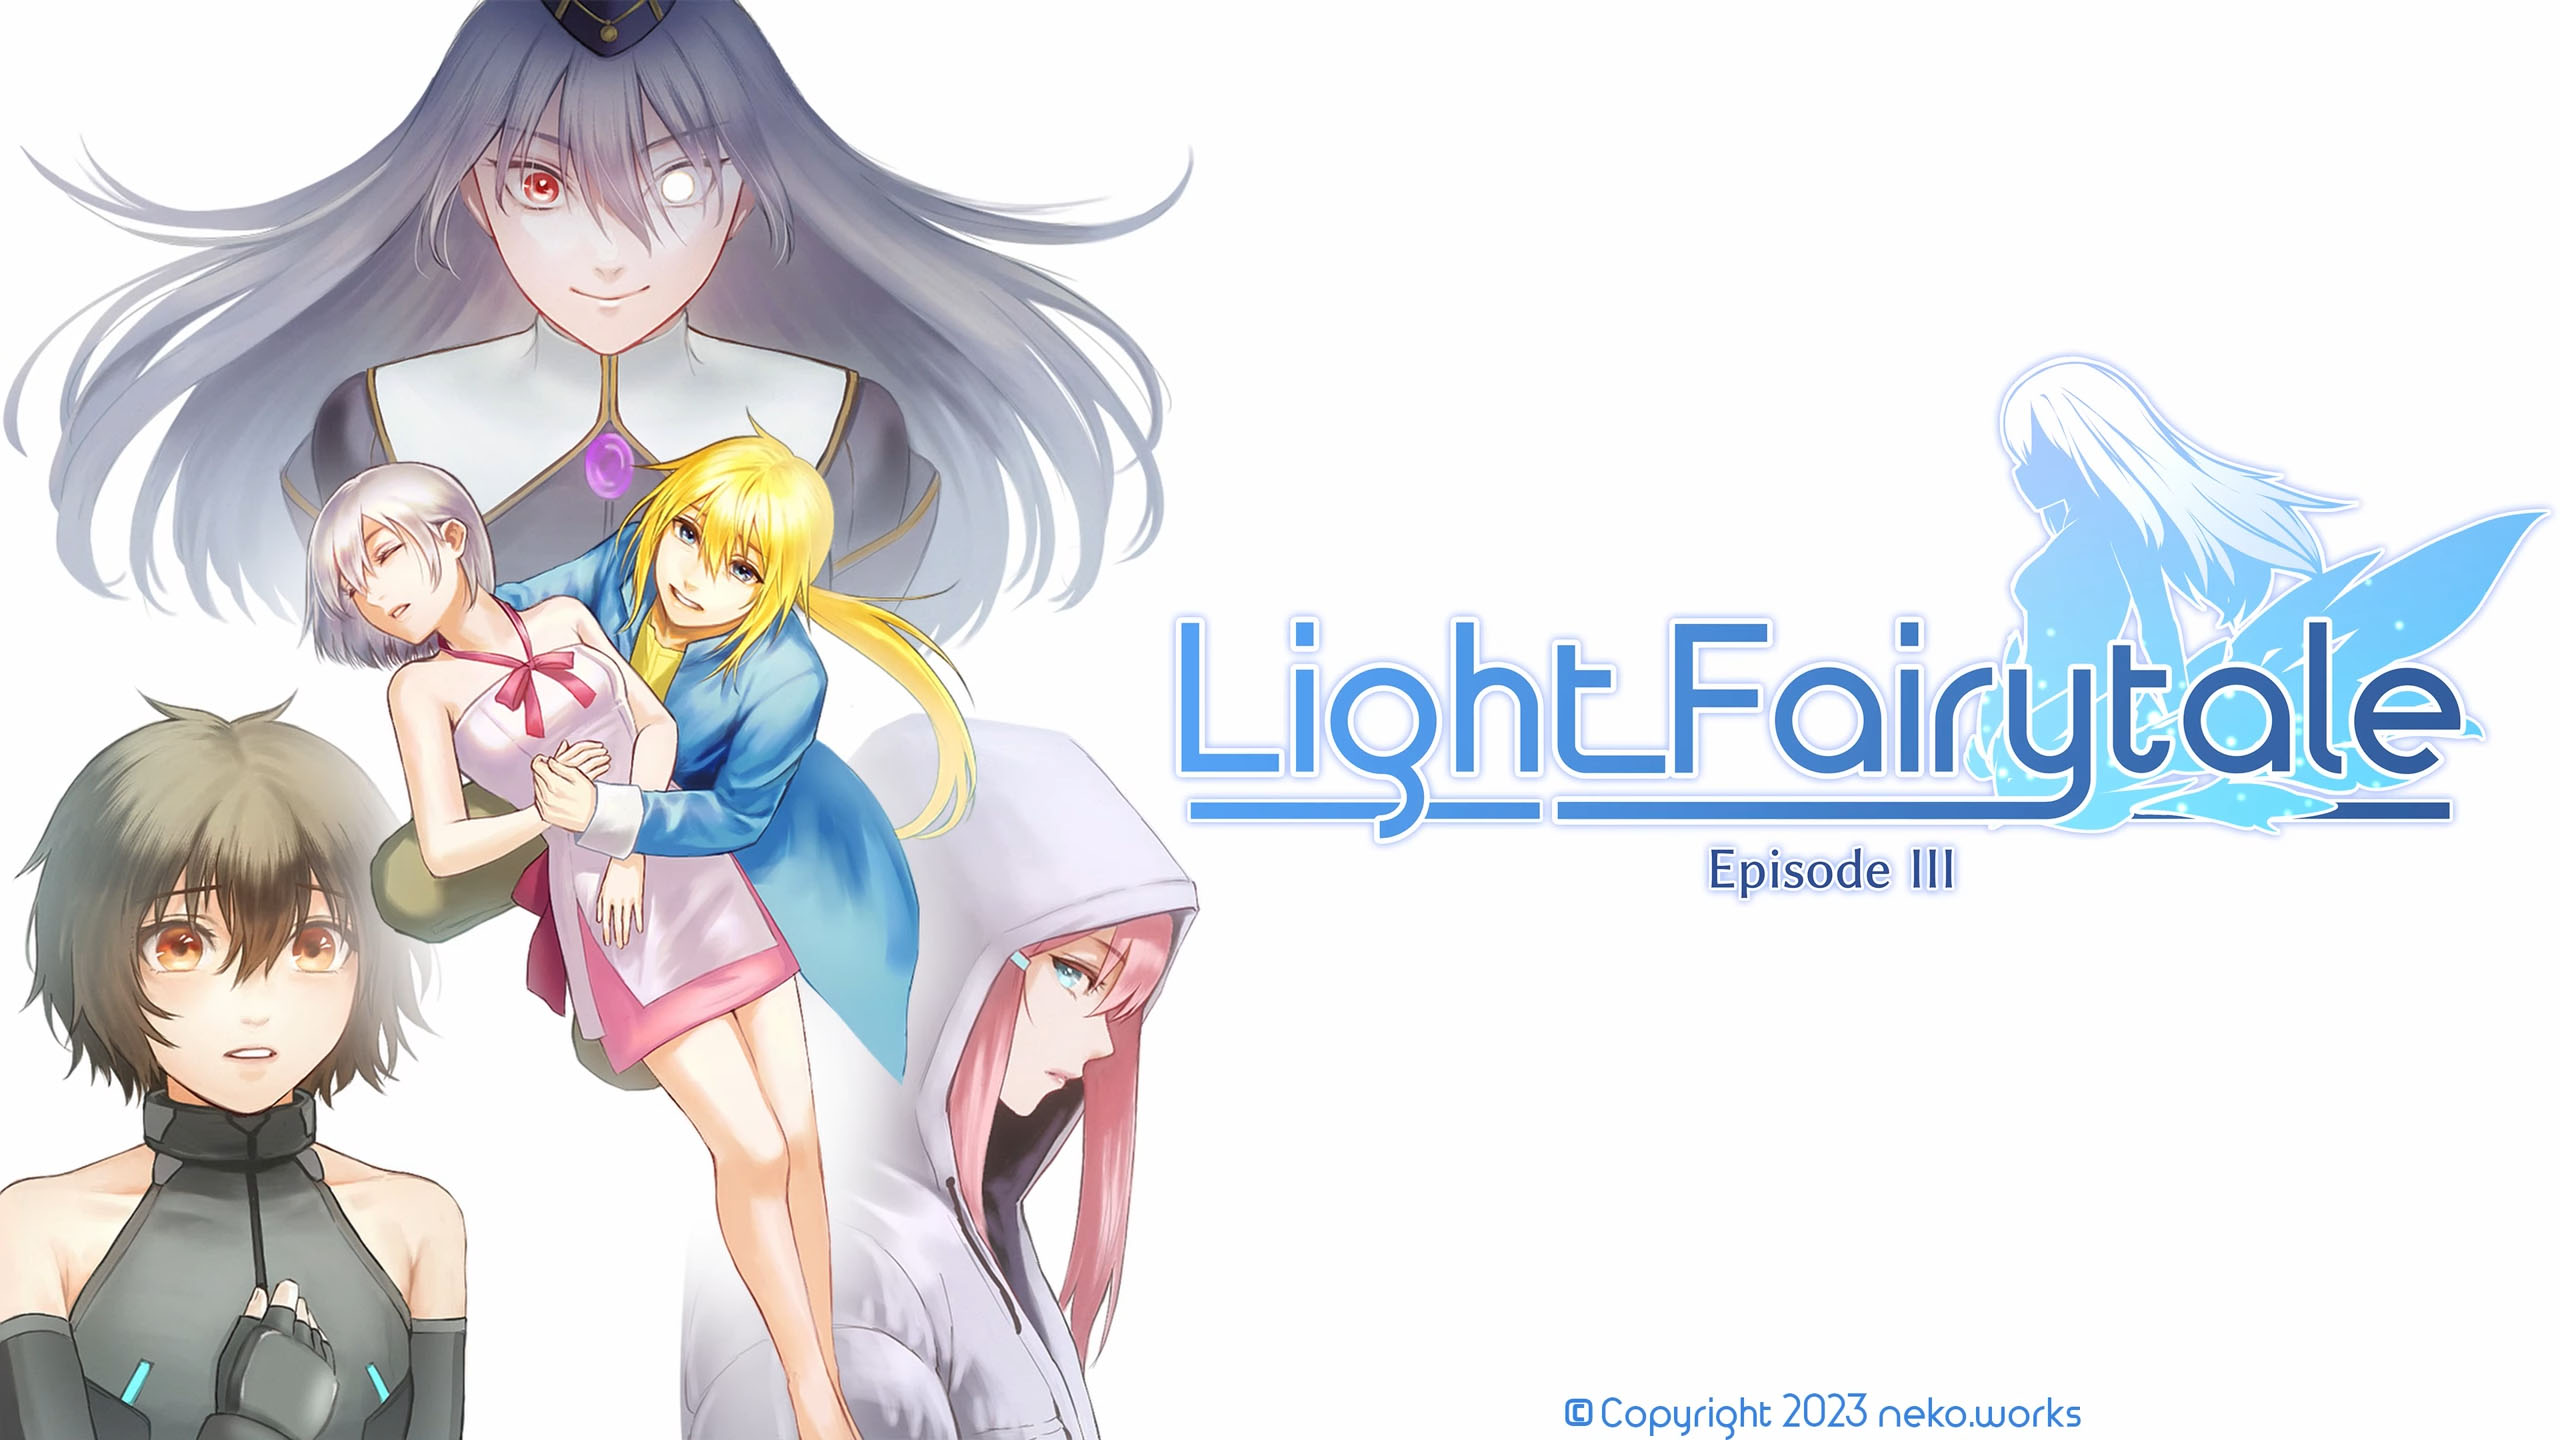 Light Fairytale Episode III